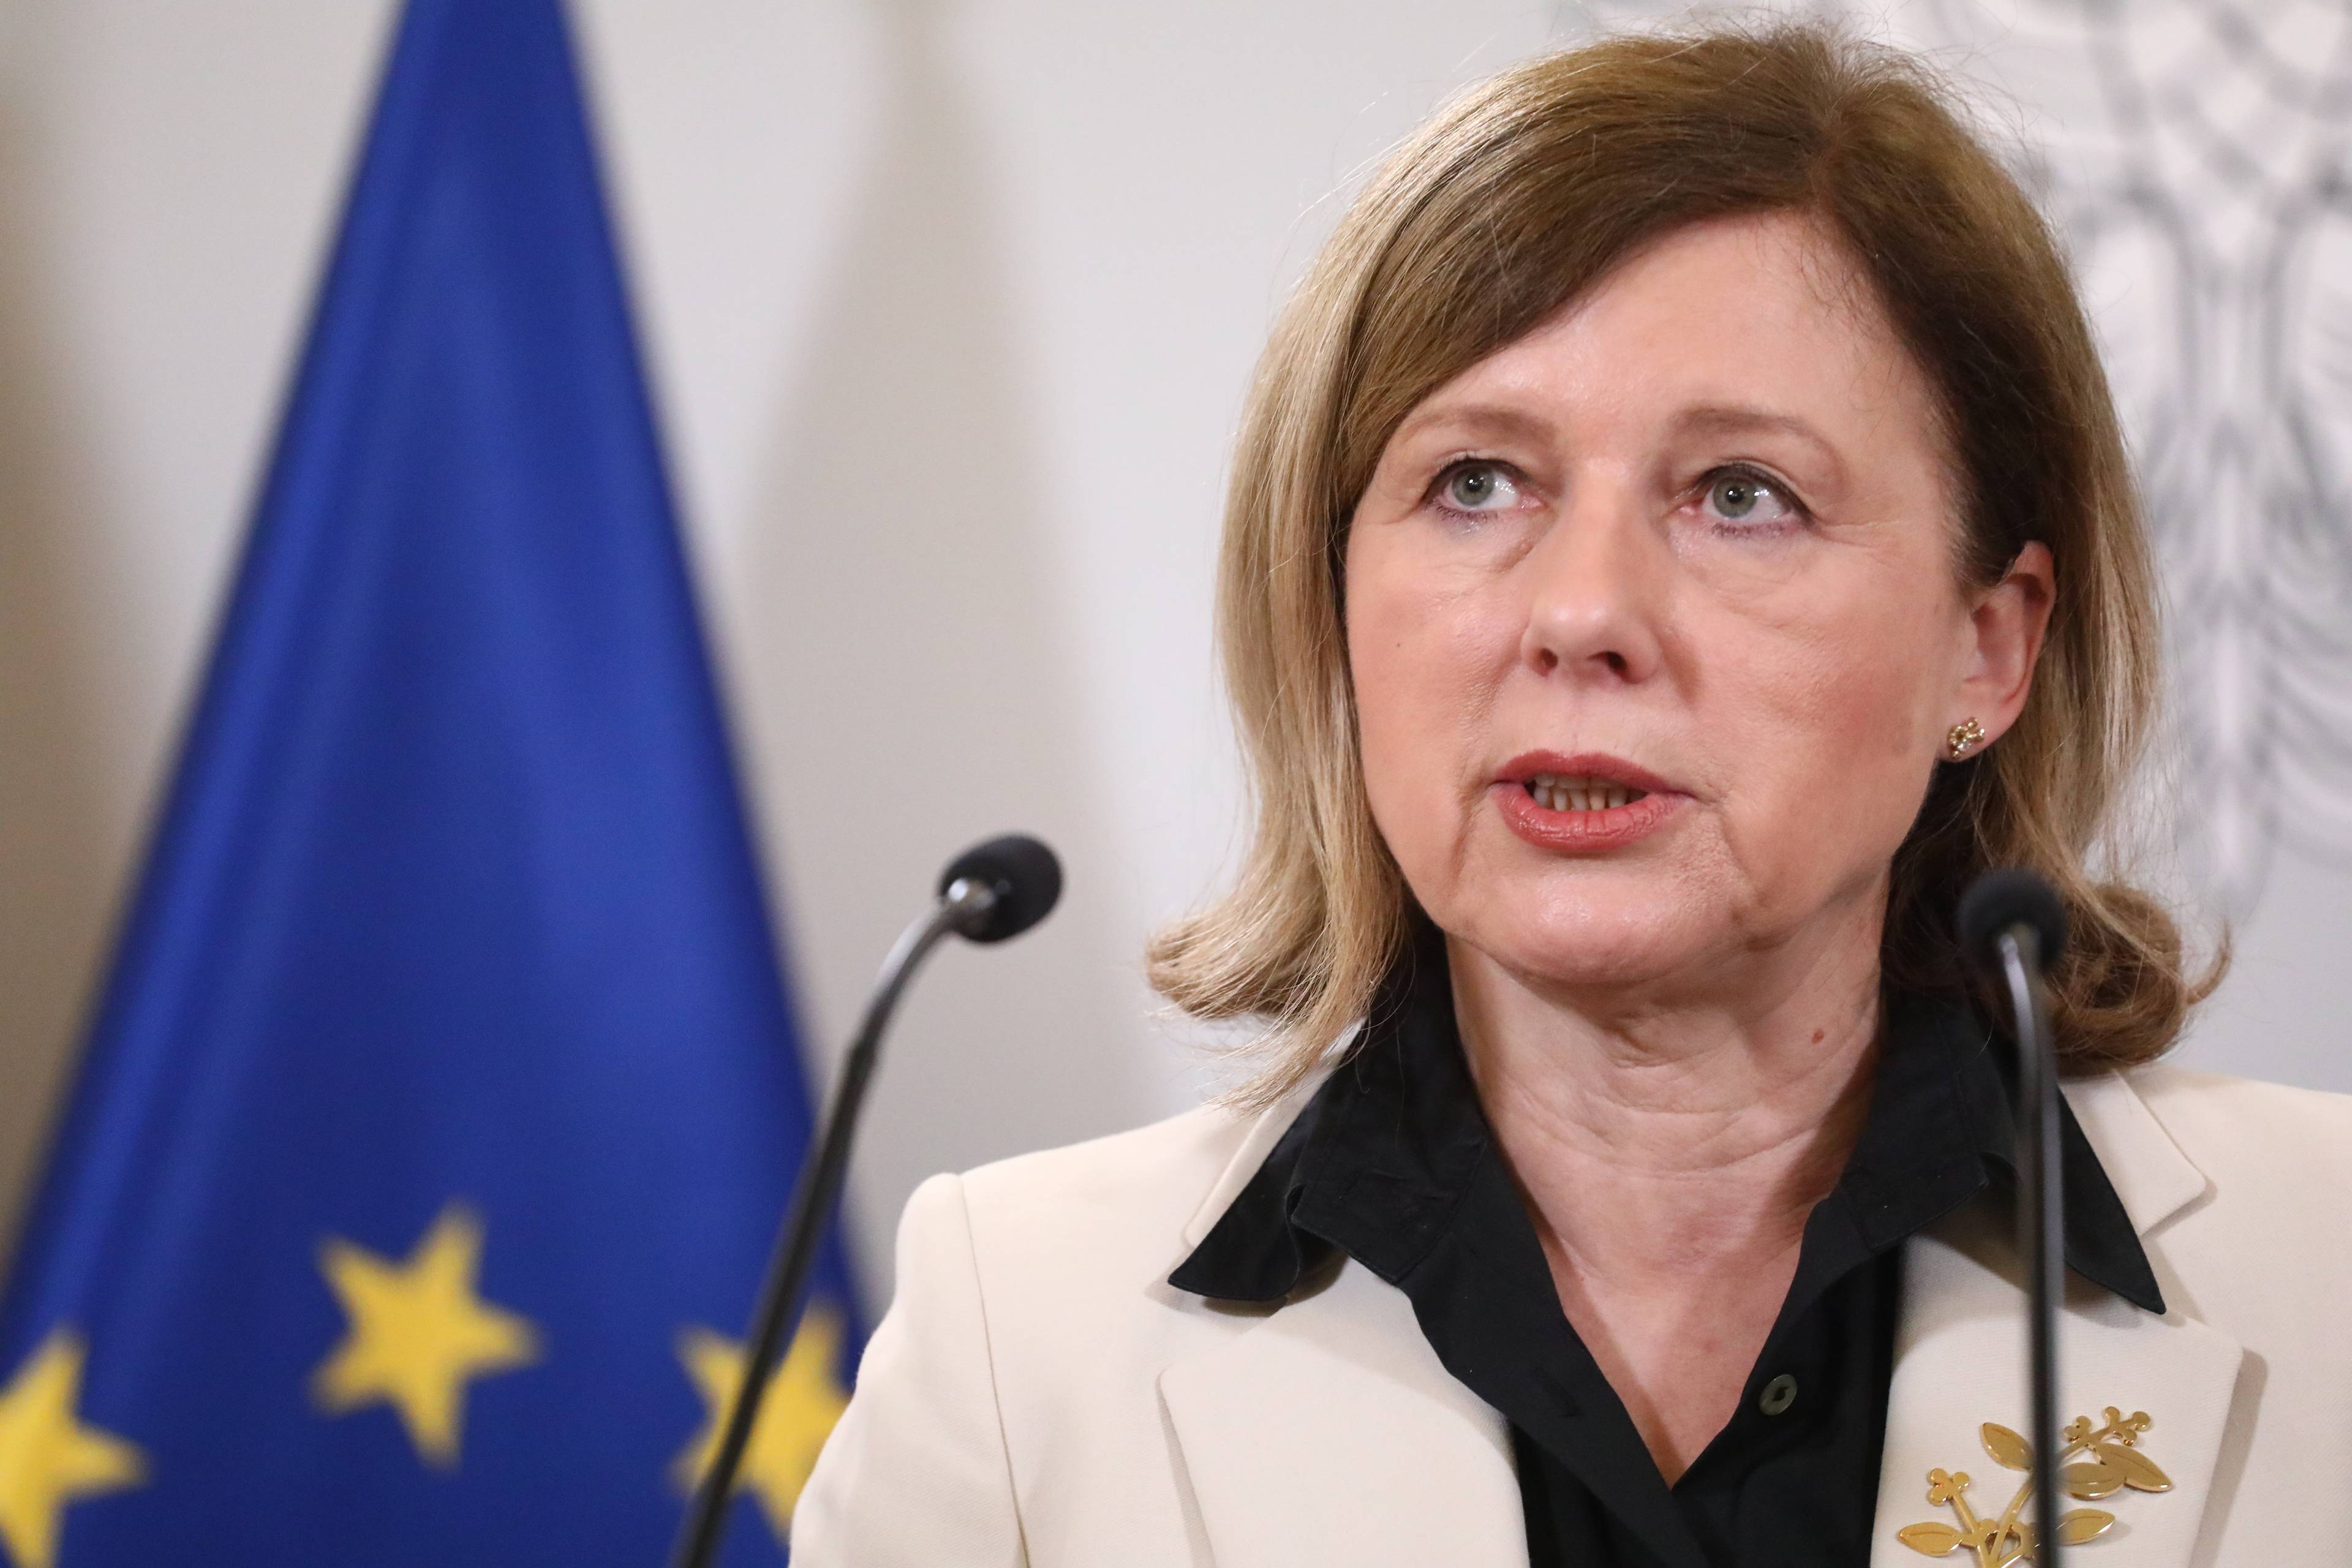 Vera JOurova, wiceprzewodniącza Komisji Europejskiej, w tle niebieska flaga ze złotymi gwiazdkami